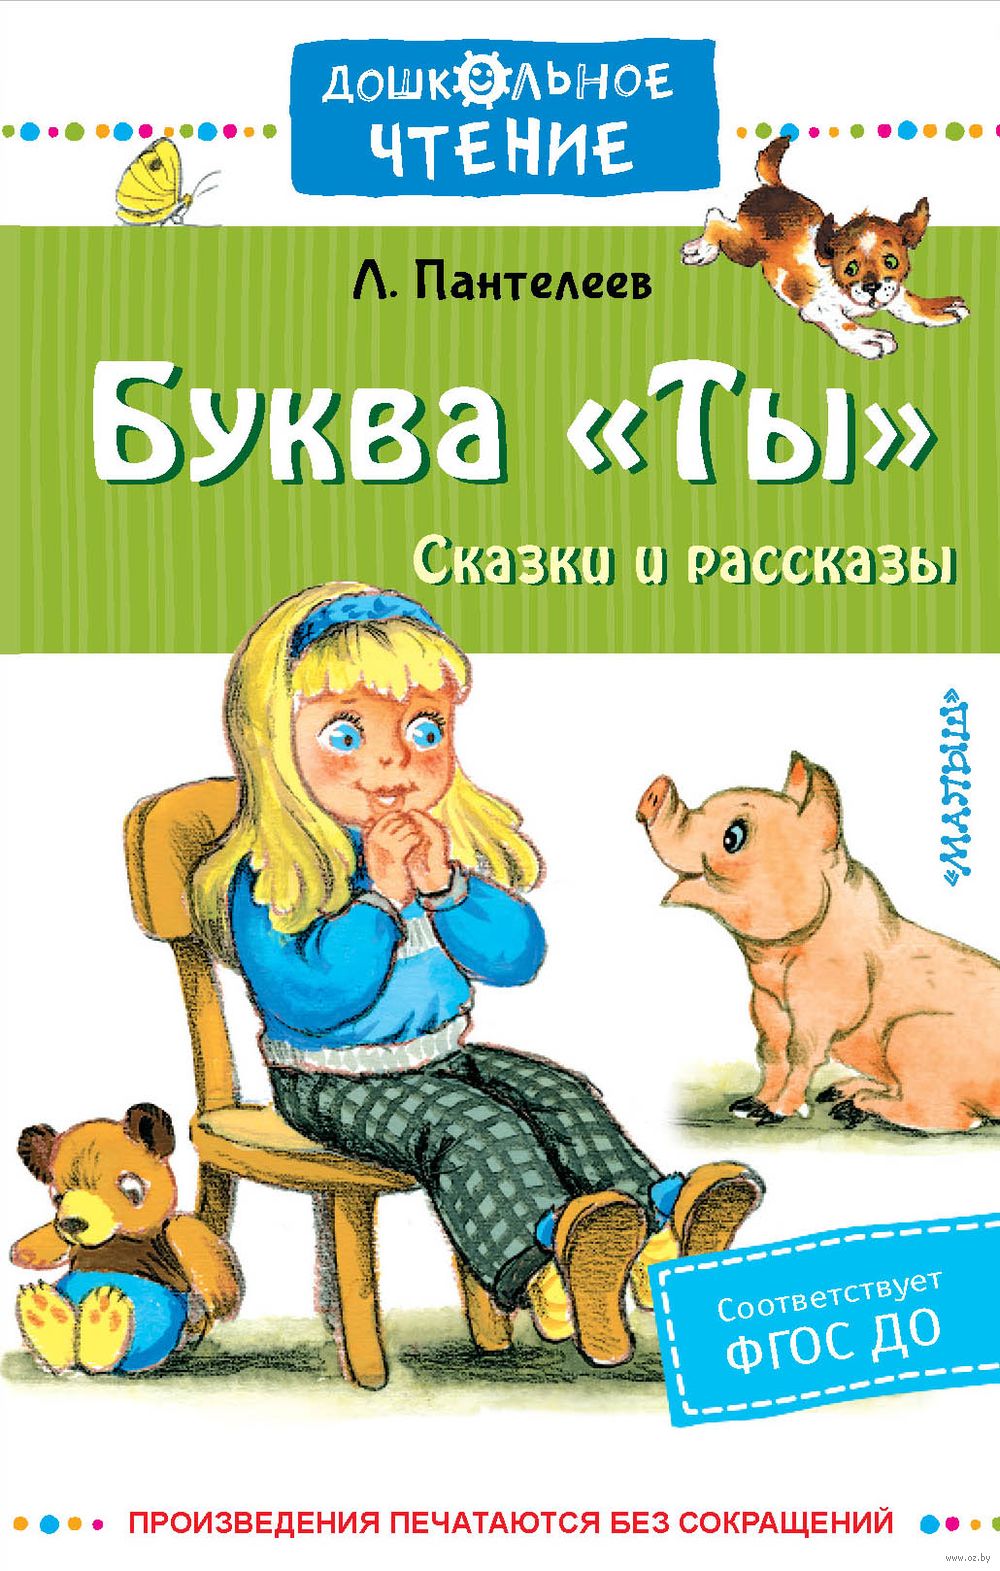 Георгий Пантелеев - Детский дизайн краткое содержание